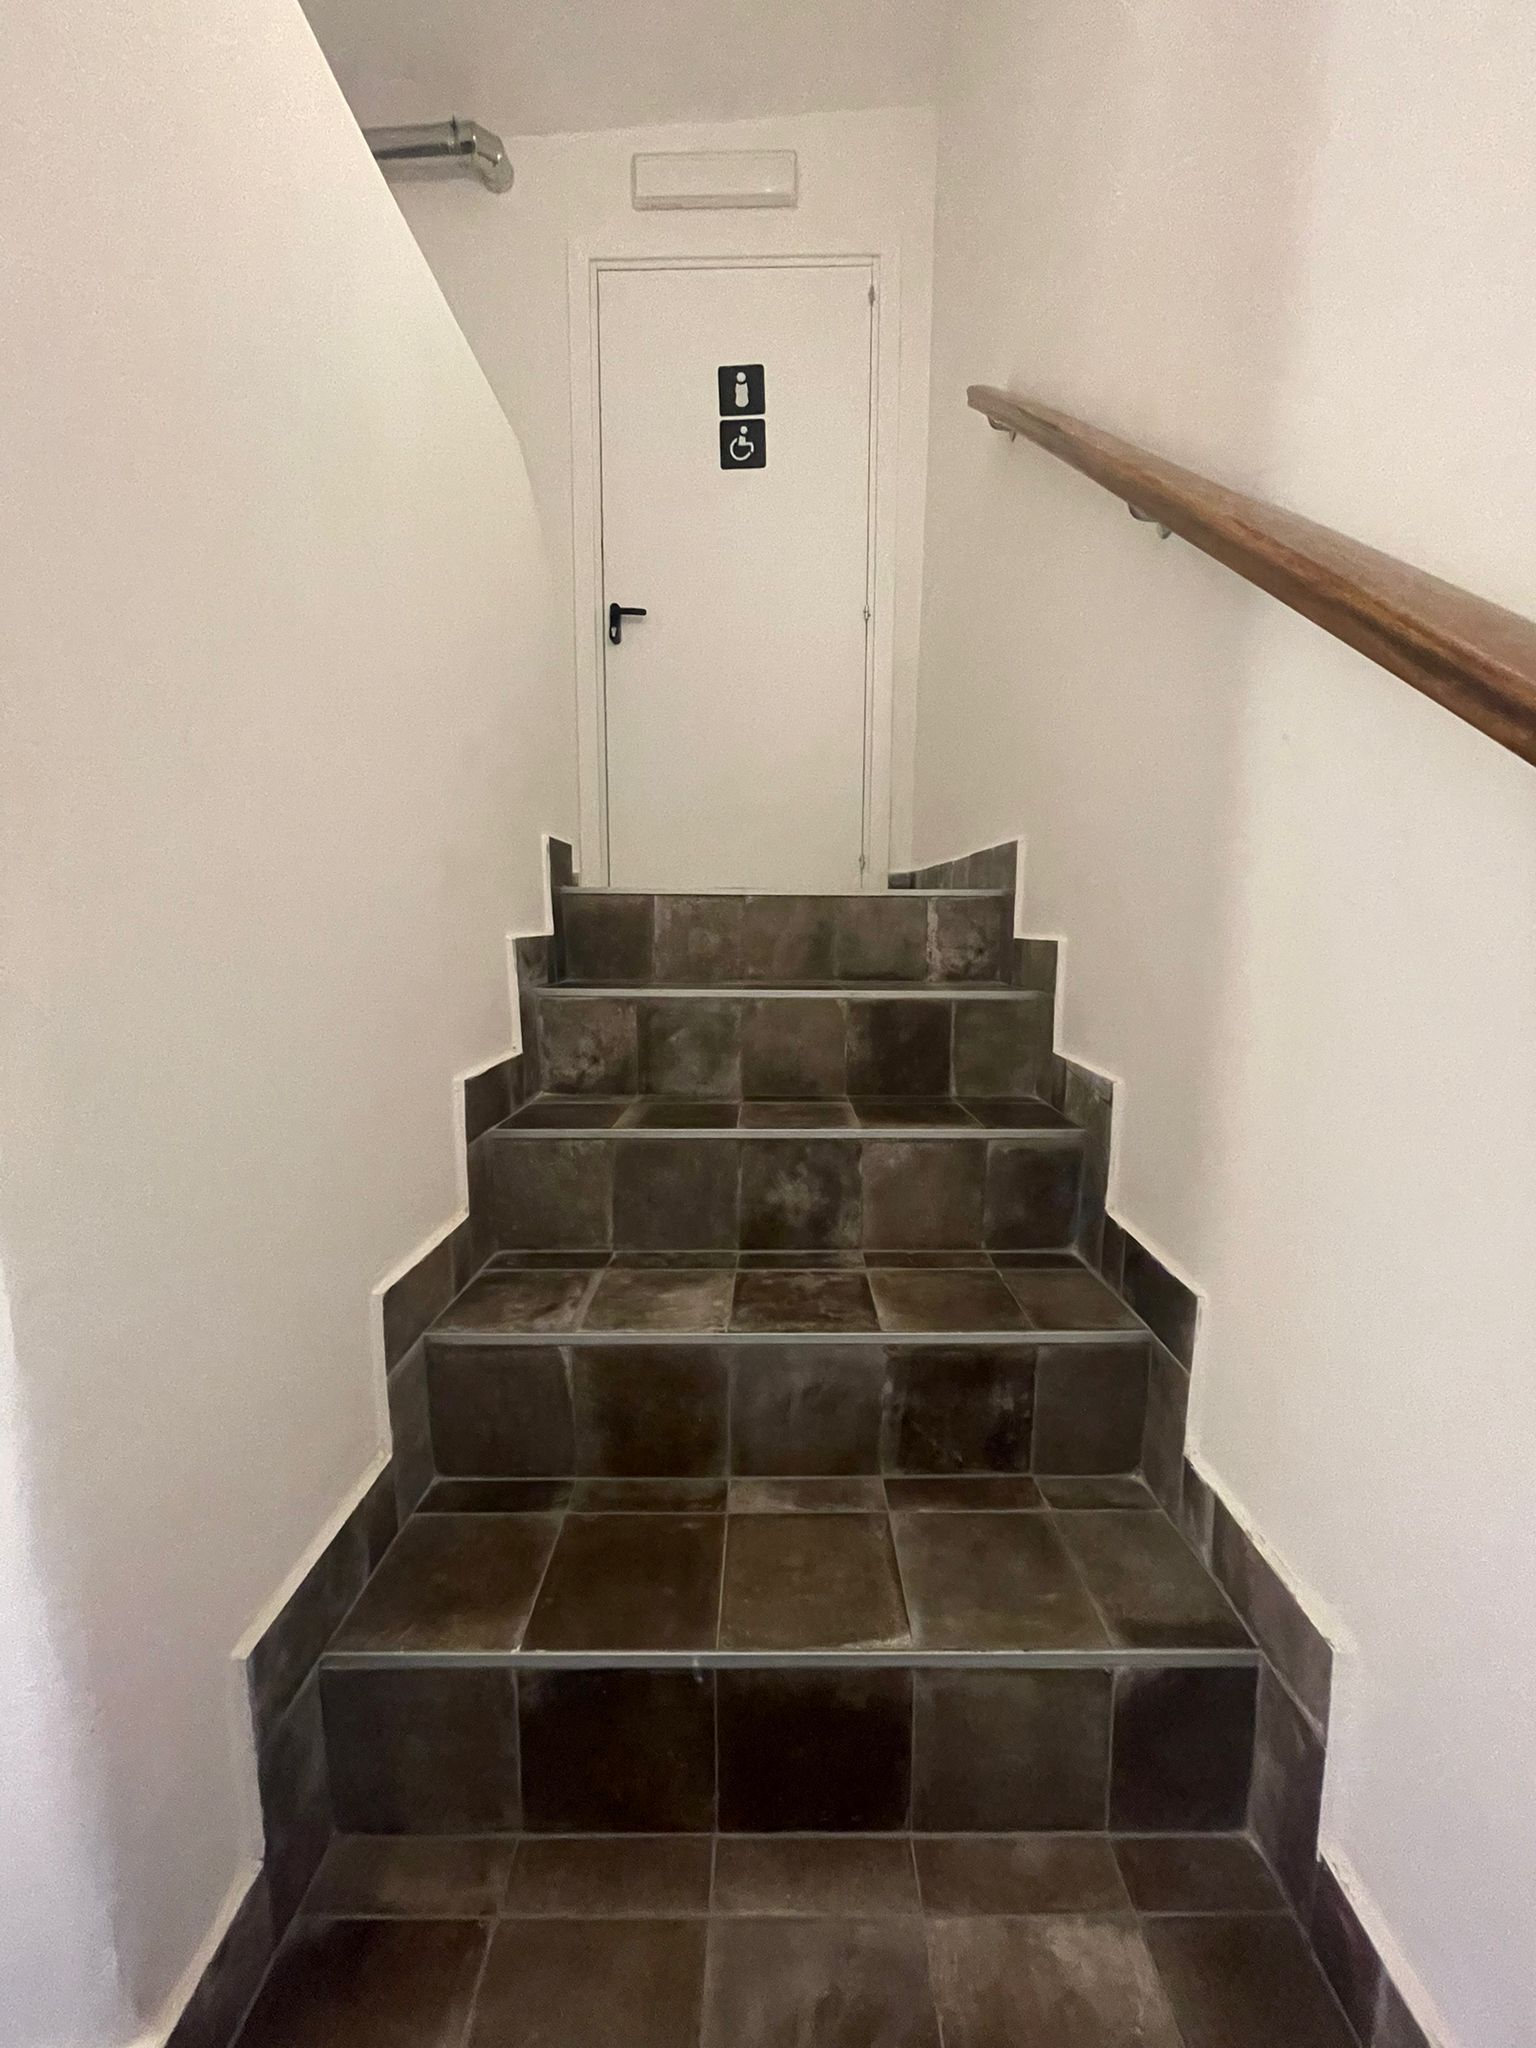 Treppe zum Behinderten-WC, gesehen auf Procida